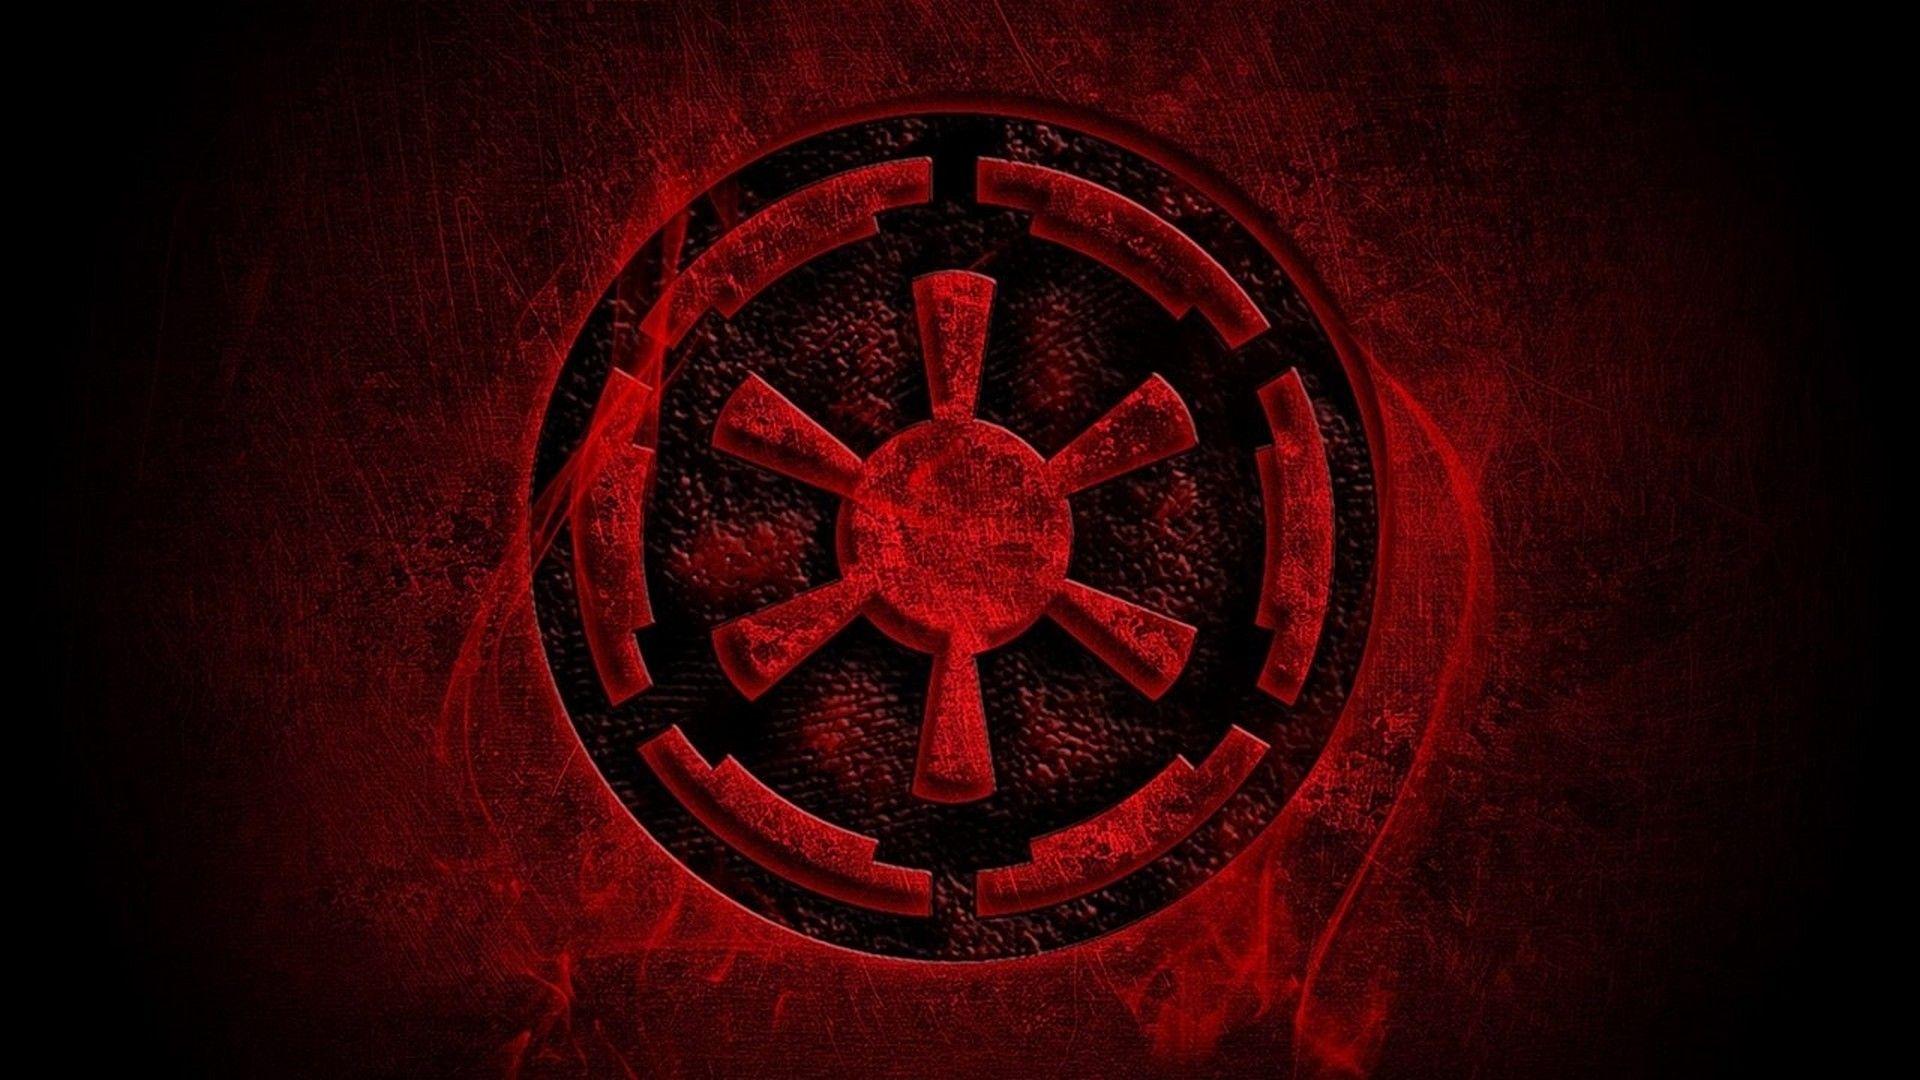 Star Wars Galactic Empire Logo Wallpaper. Star wars empire logo